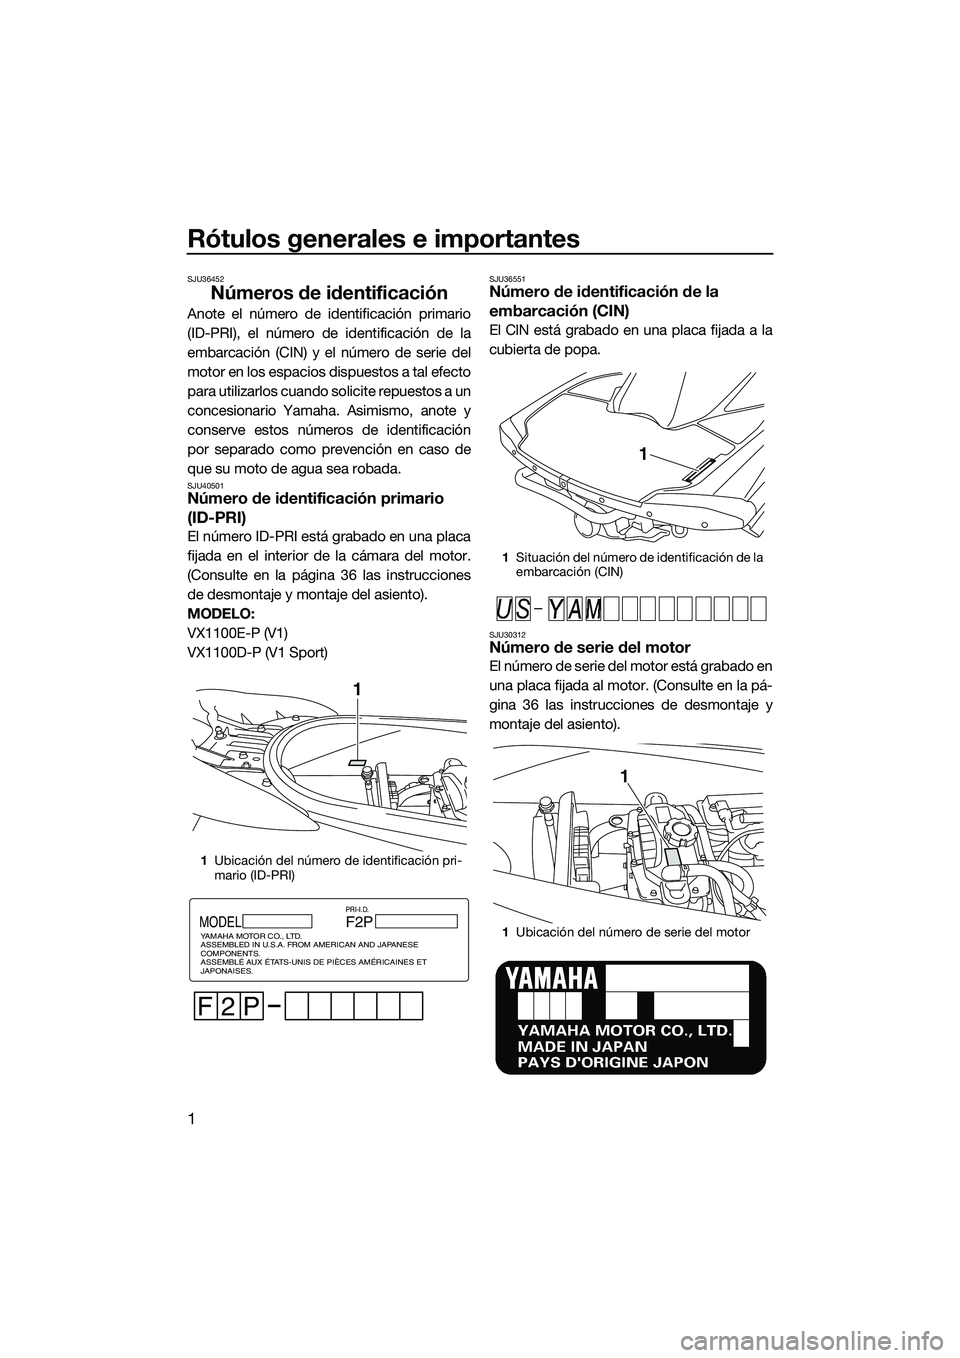 YAMAHA V1 2015  Manuale de Empleo (in Spanish) Rótulos generales e importantes
1
SJU36452
Números de identificación
Anote el número de identificación primario
(ID-PRI), el número de identificación de la
embarcación (CIN) y el número de se